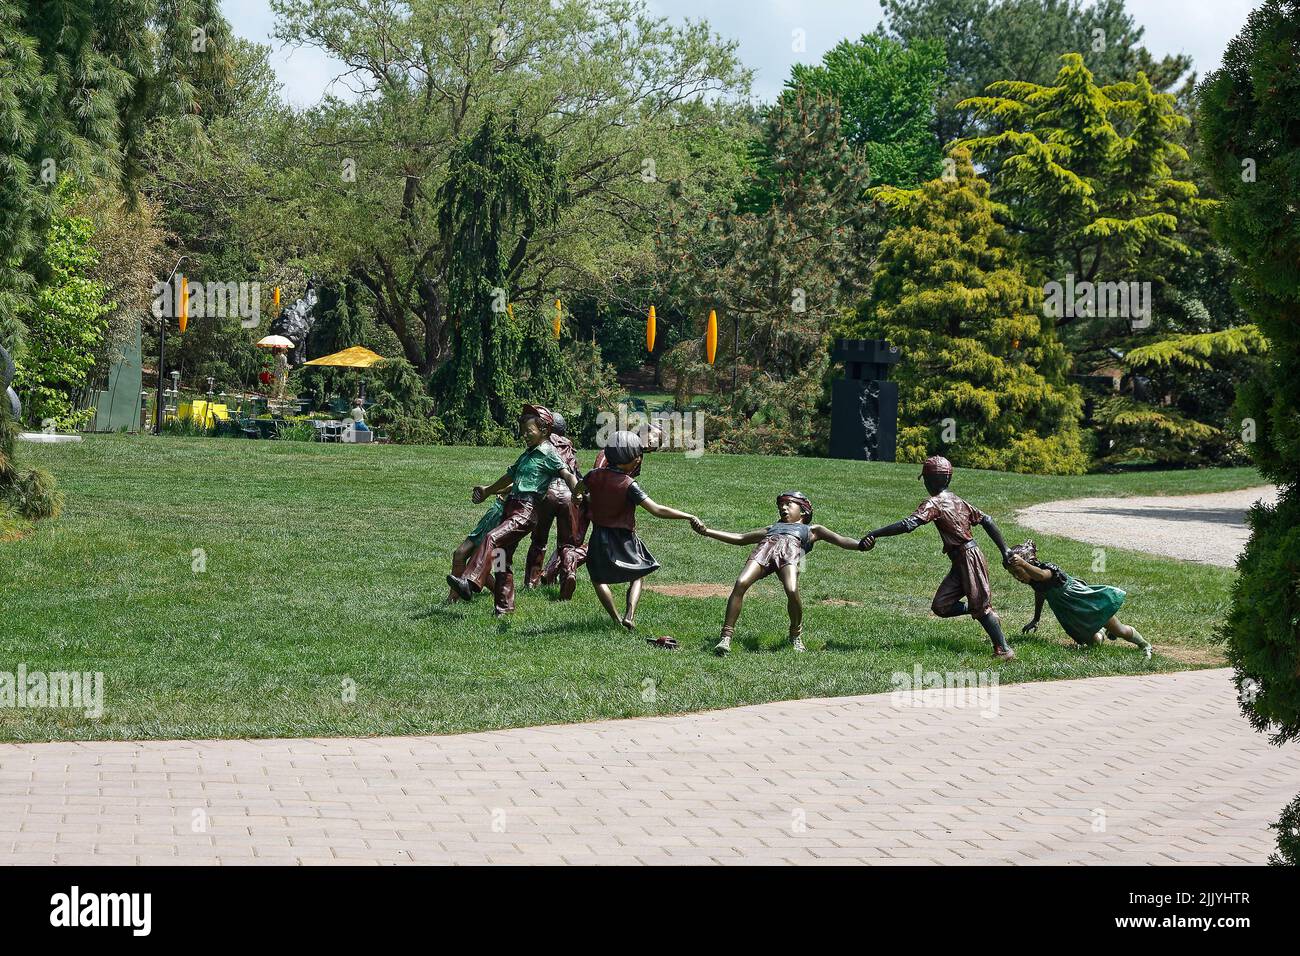 Terrenos para la escultura; niños jugando la escultura, hierba verde, árboles, camino de adoquines, Seward Johnson Center for the Arts, Nueva Jersey; Hamilton; N. Foto de stock